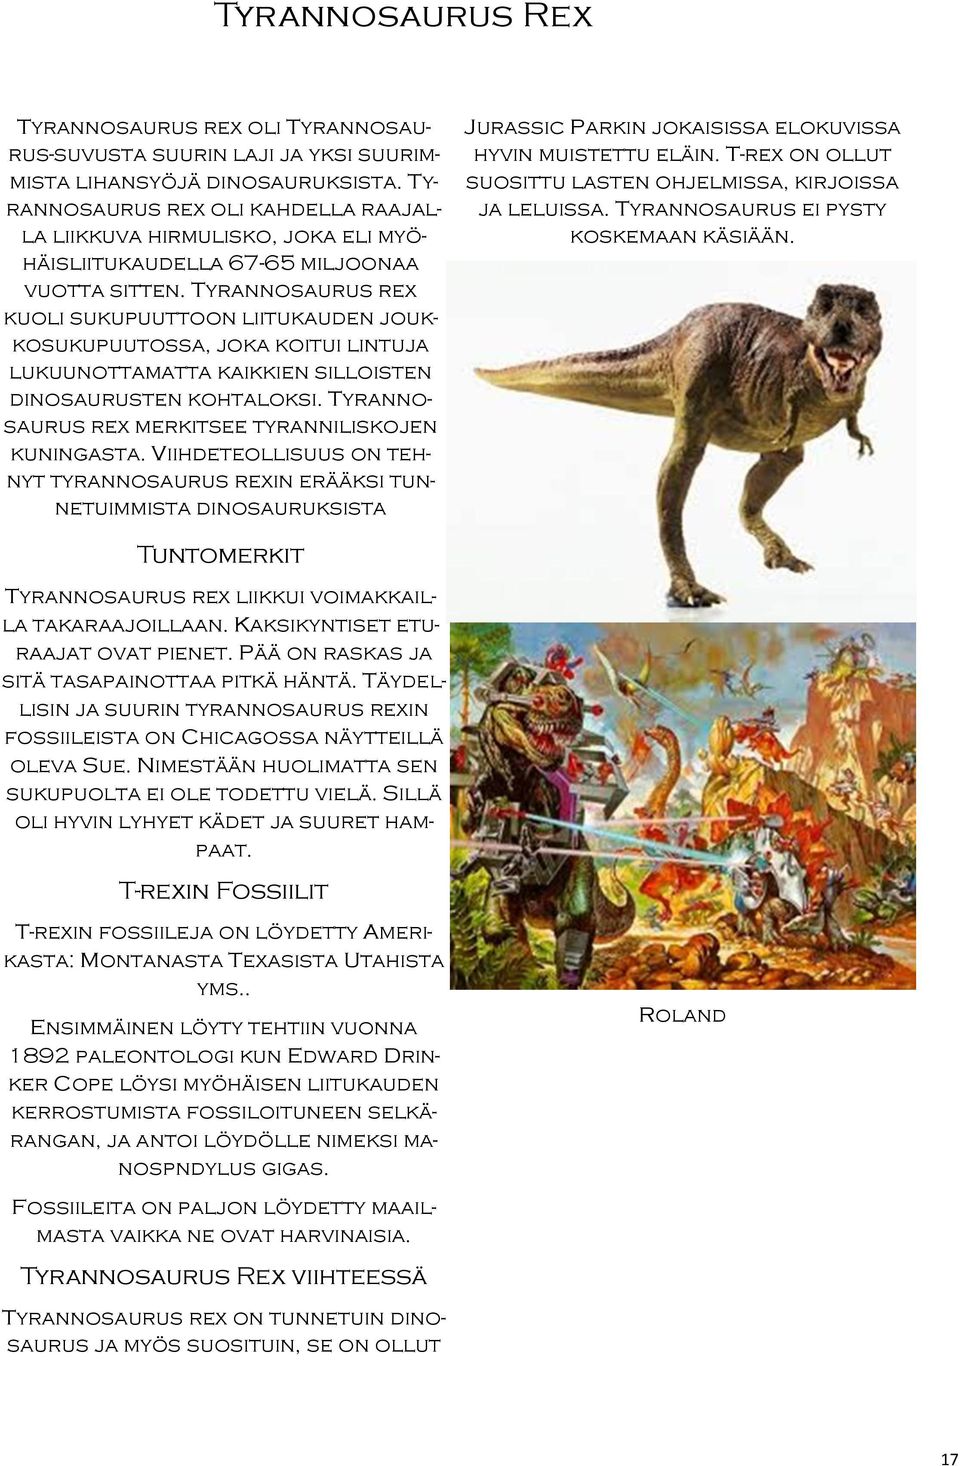 Tyrannosaurus rex kuoli sukupuuttoon liitukauden joukkosukupuutossa, joka koitui lintuja lukuunottamatta kaikkien silloisten dinosaurusten kohtaloksi.